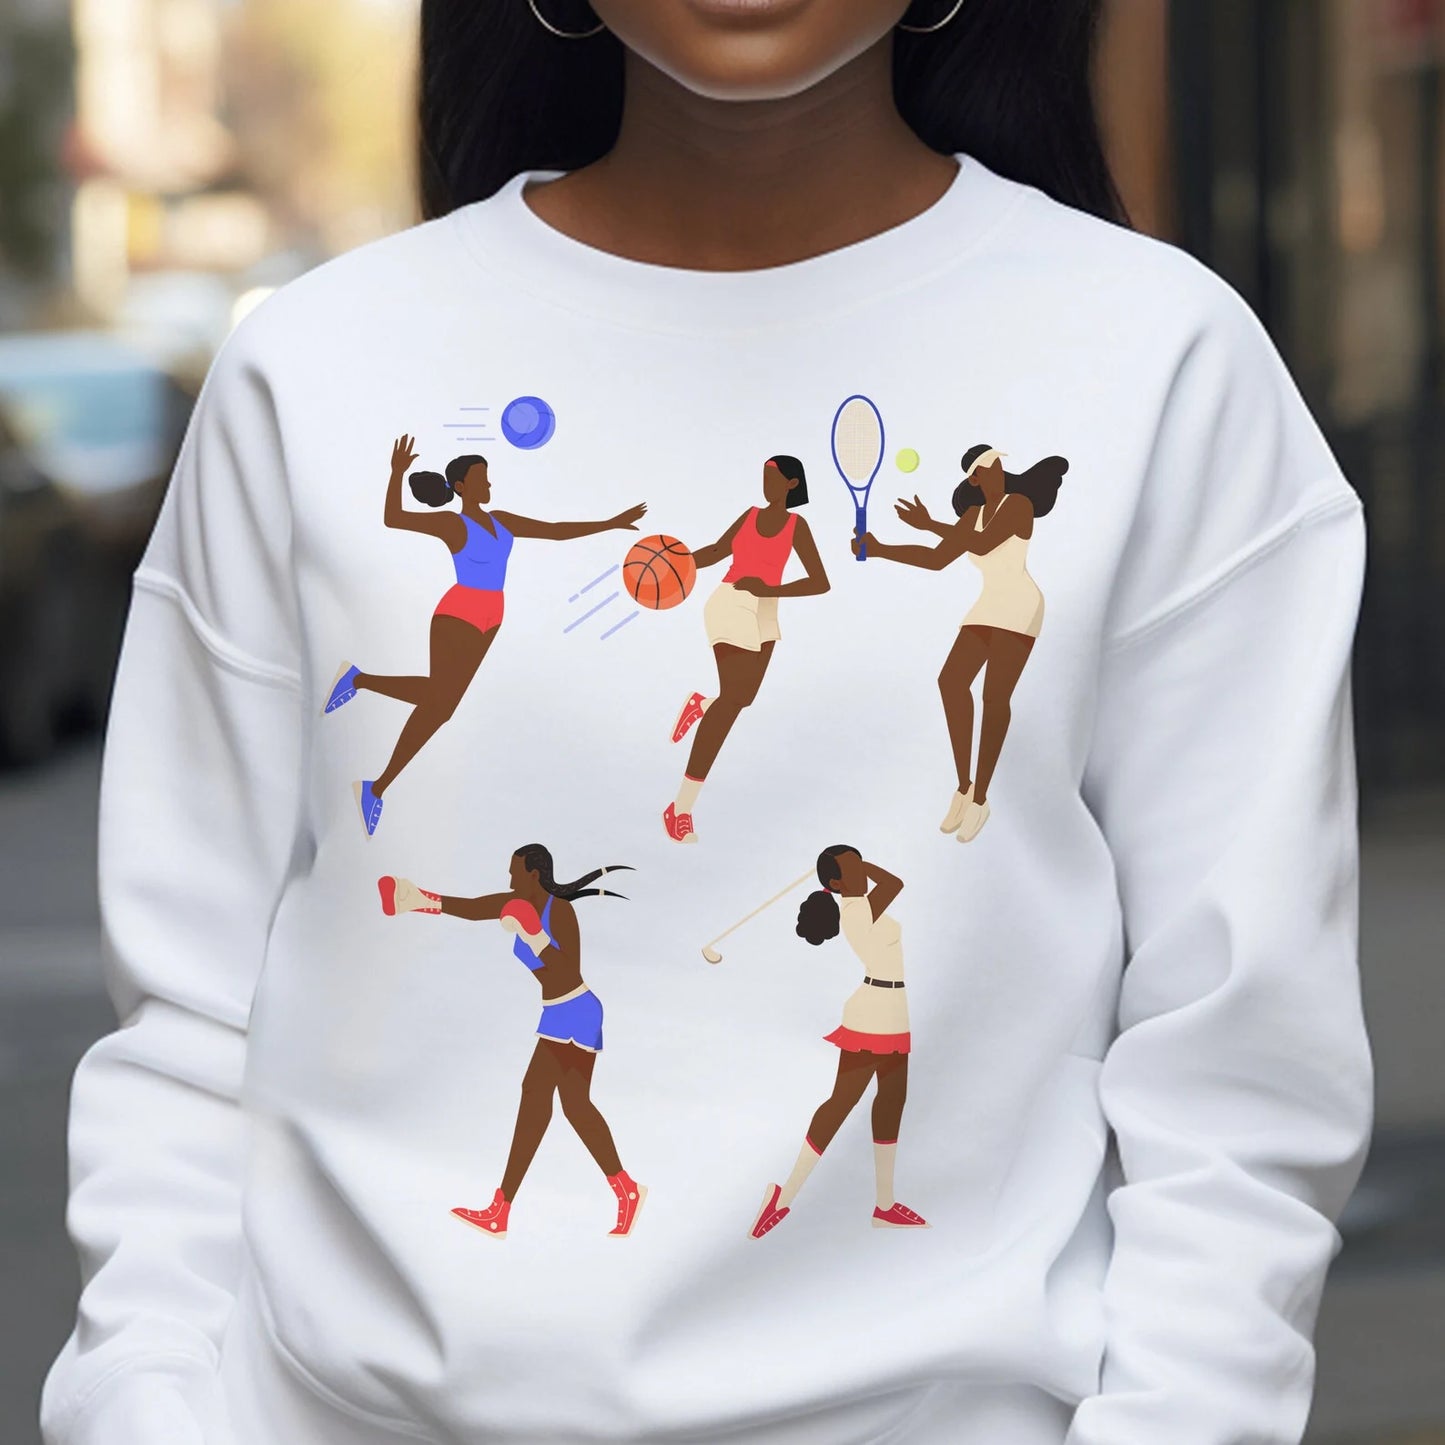 Women in Sports Sweatshirt